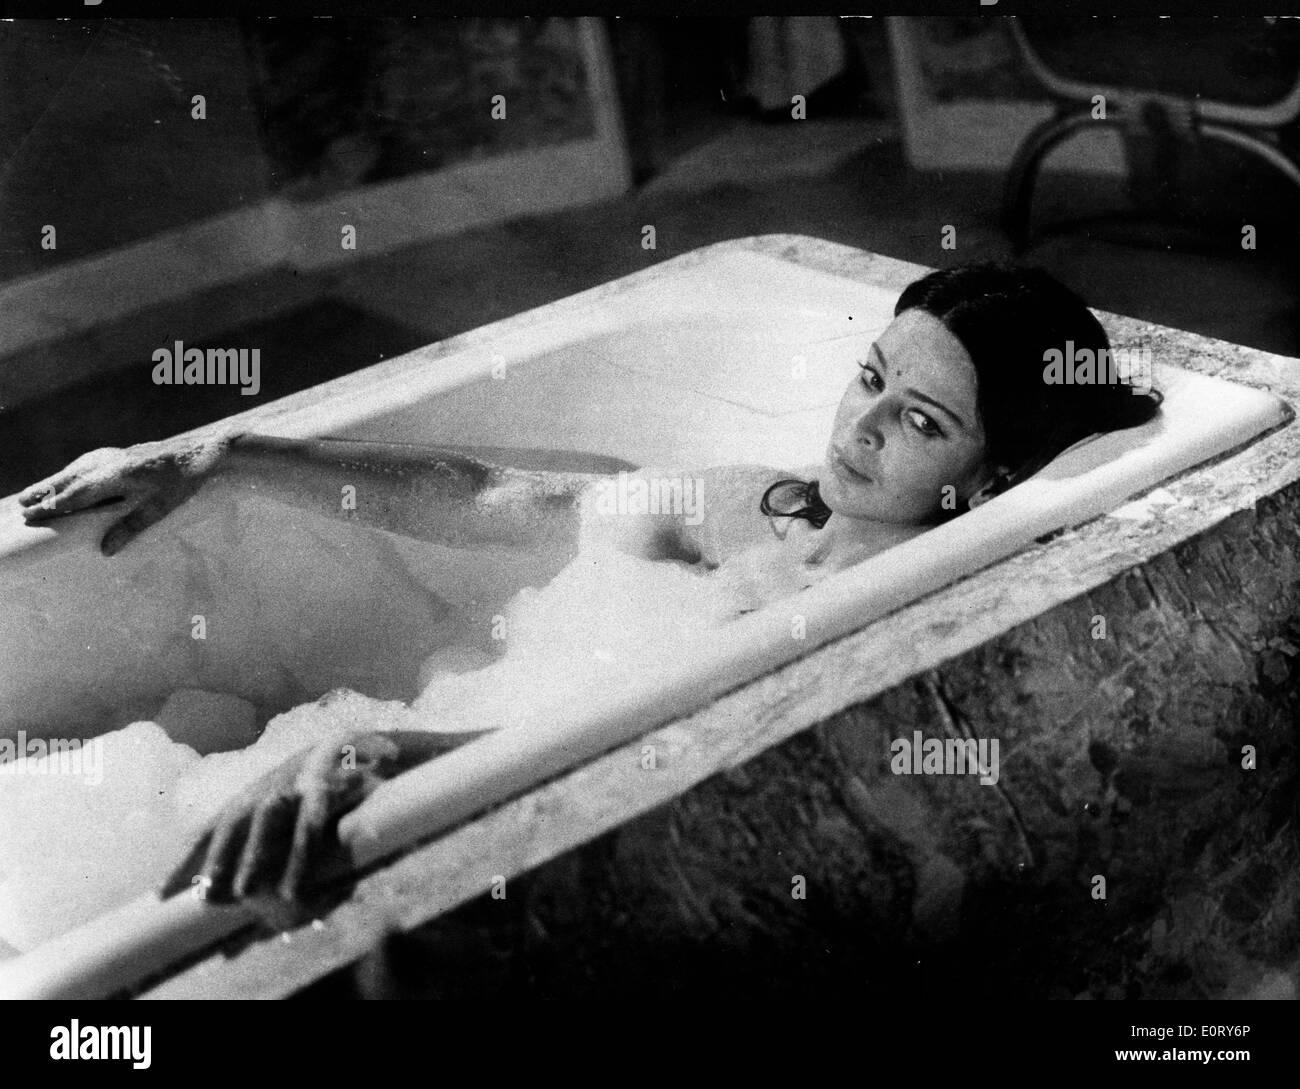 L'actrice Eleonora Rossi Drago dans la baignoire Banque D'Images